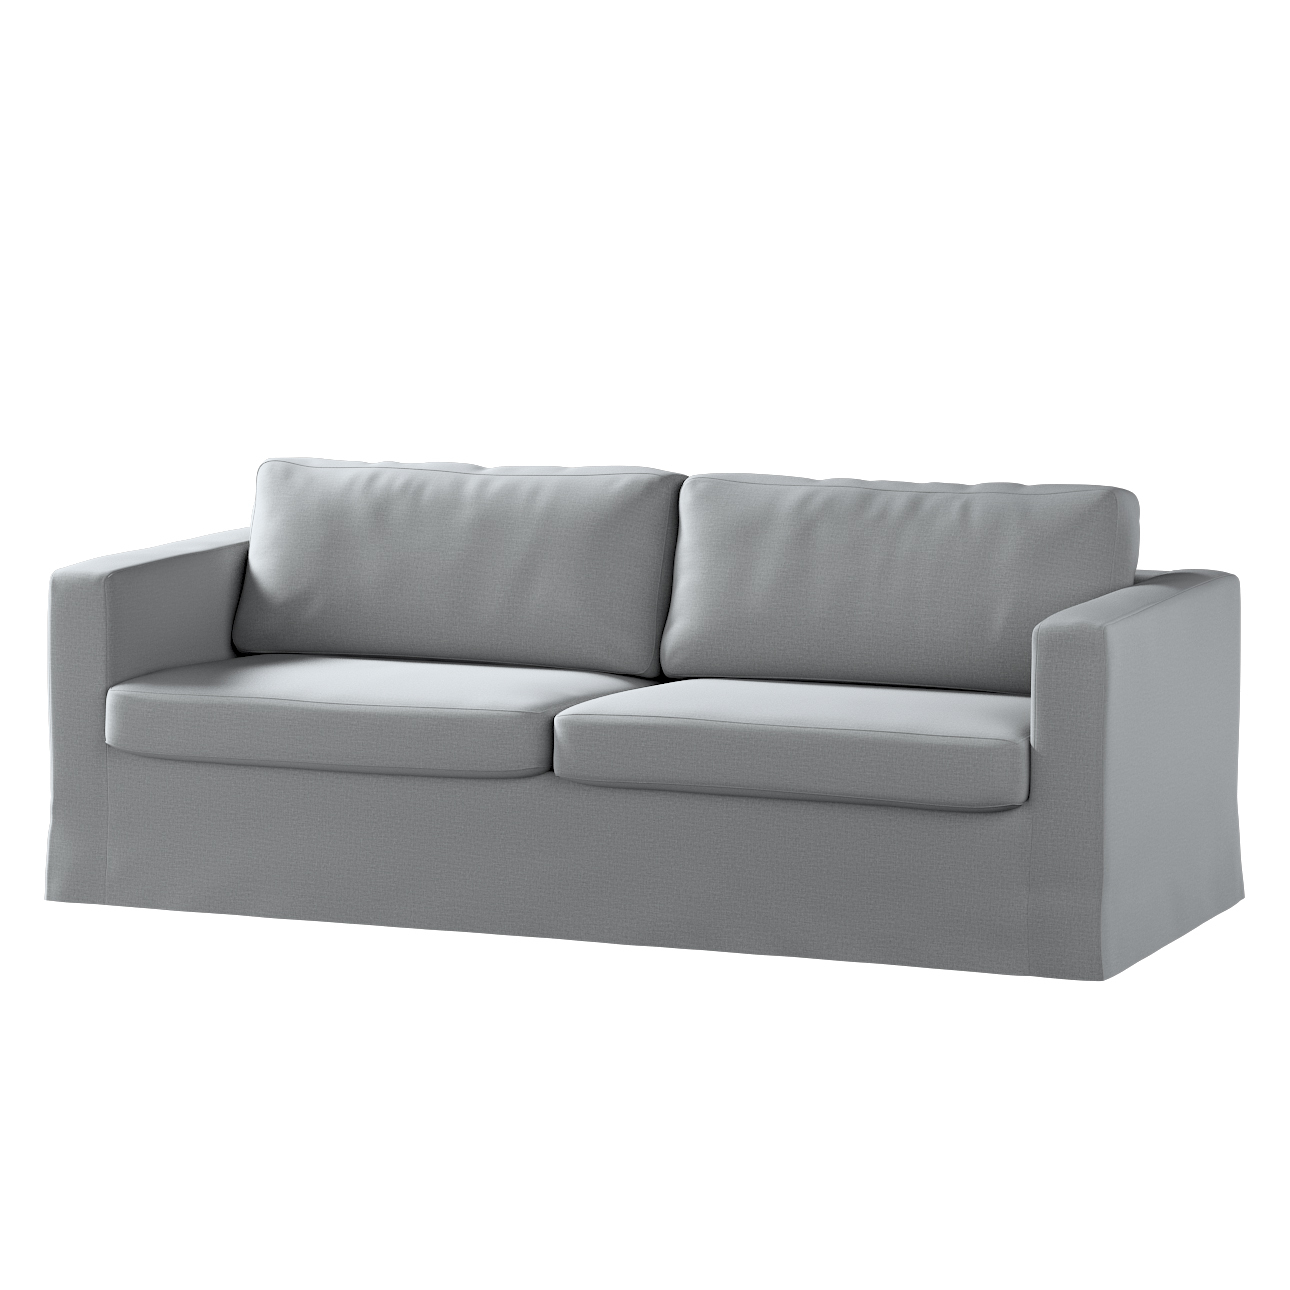 Bezug für Karlstad 3-Sitzer Sofa nicht ausklappbar, lang, dunklegrau, Bezug günstig online kaufen